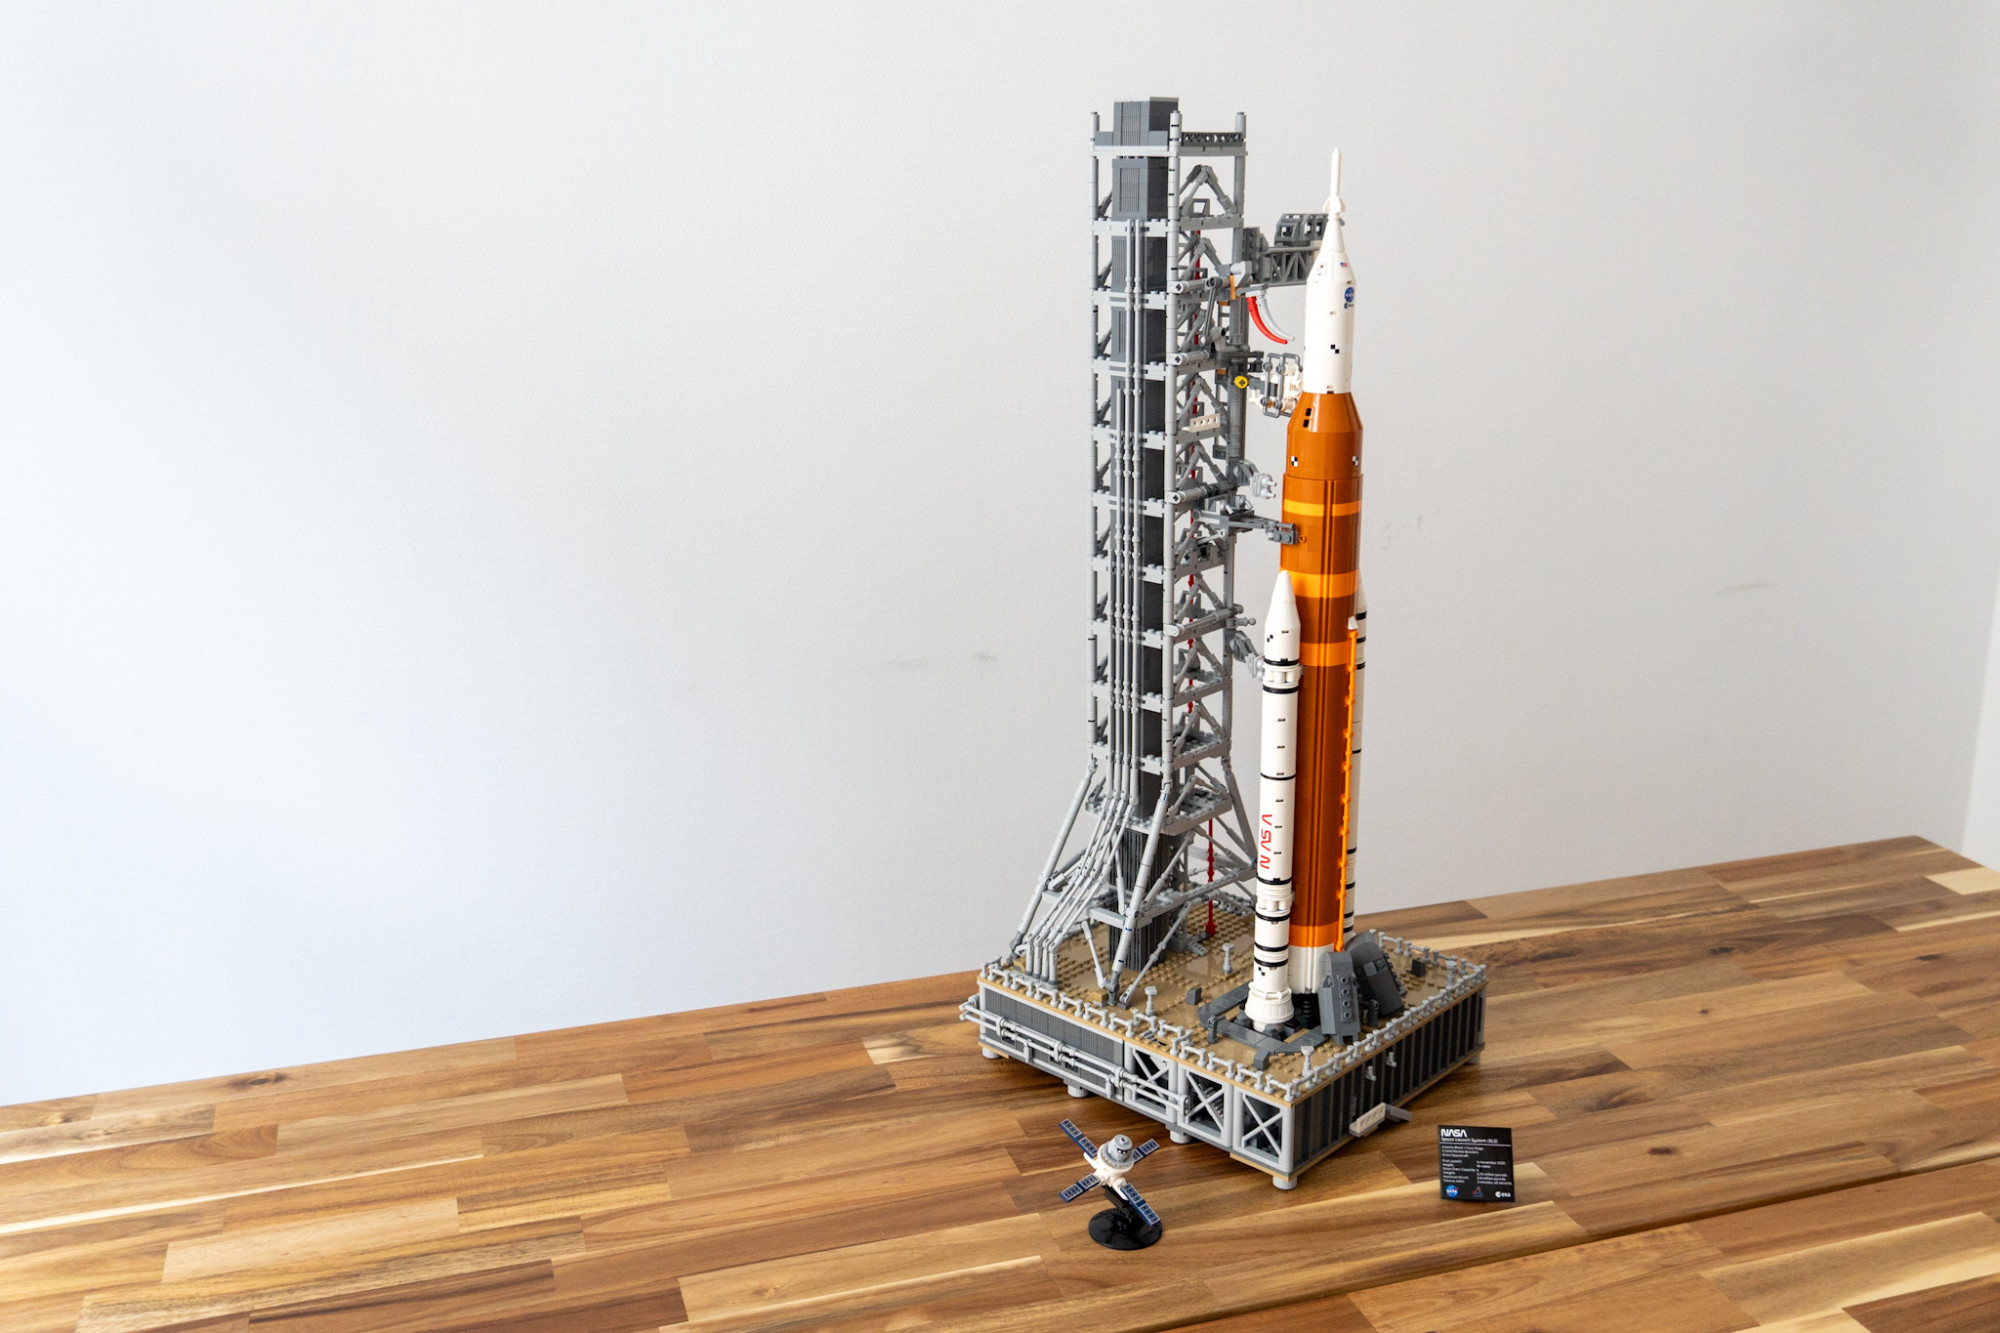 Felépítettük legóból az Artemis rakétát, amivel pár éven belül újra emberek utazhatnak a Holdra